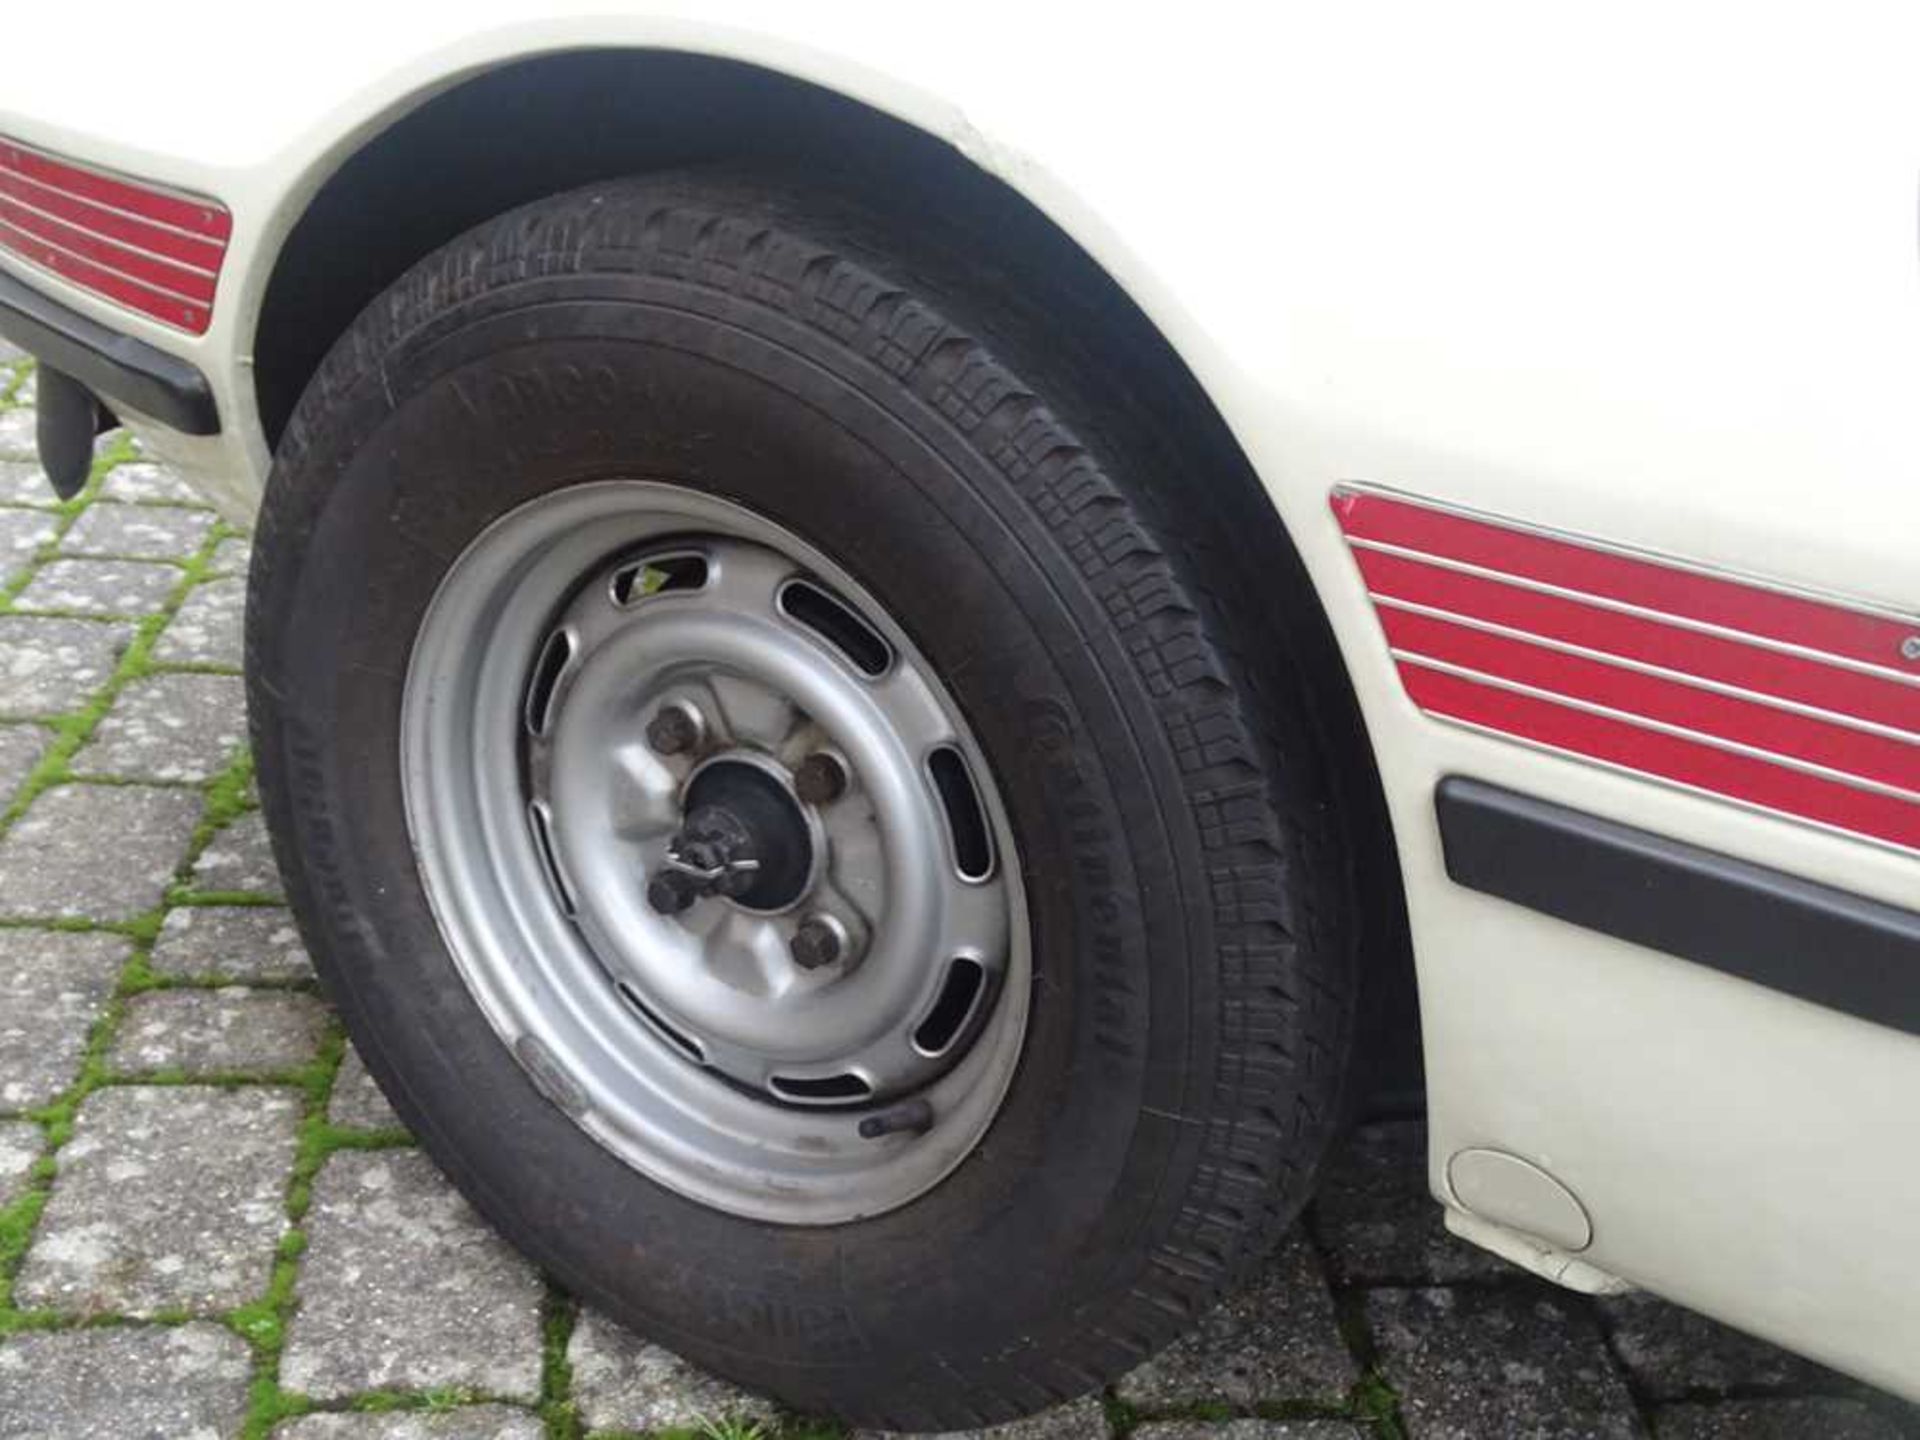 1974 Volkswagen SP2 - Image 27 of 32